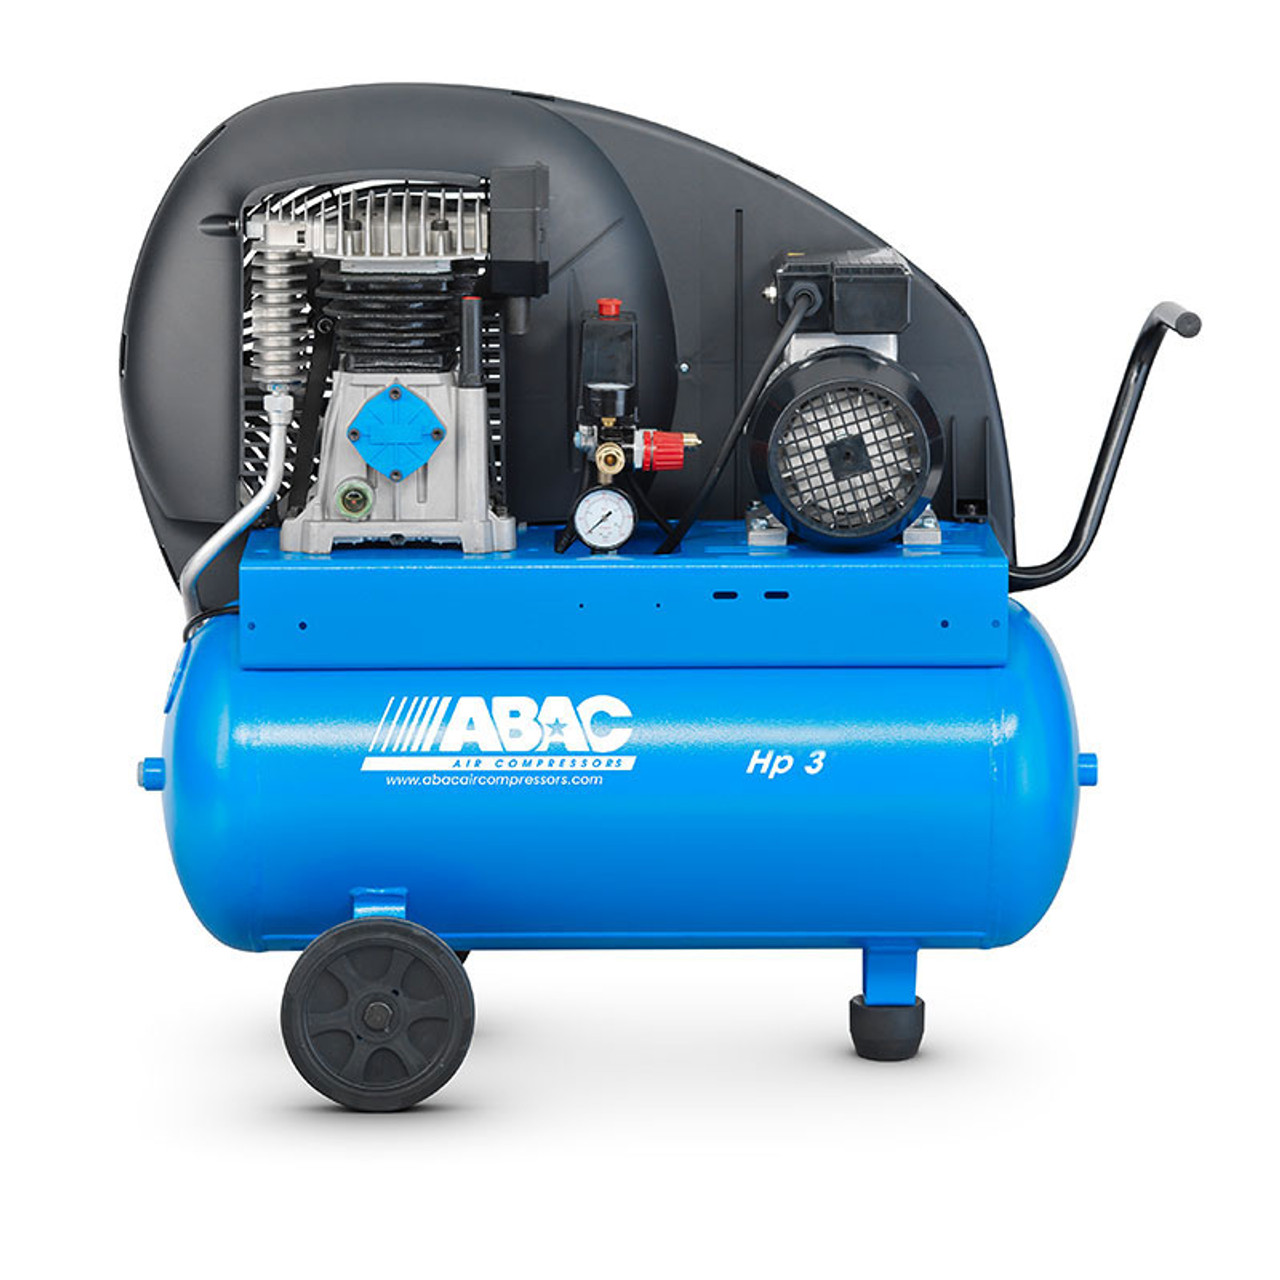 ABAC Pro A29B-0 50 CM2/CT2 - Compressore Portatile No Olio 50L